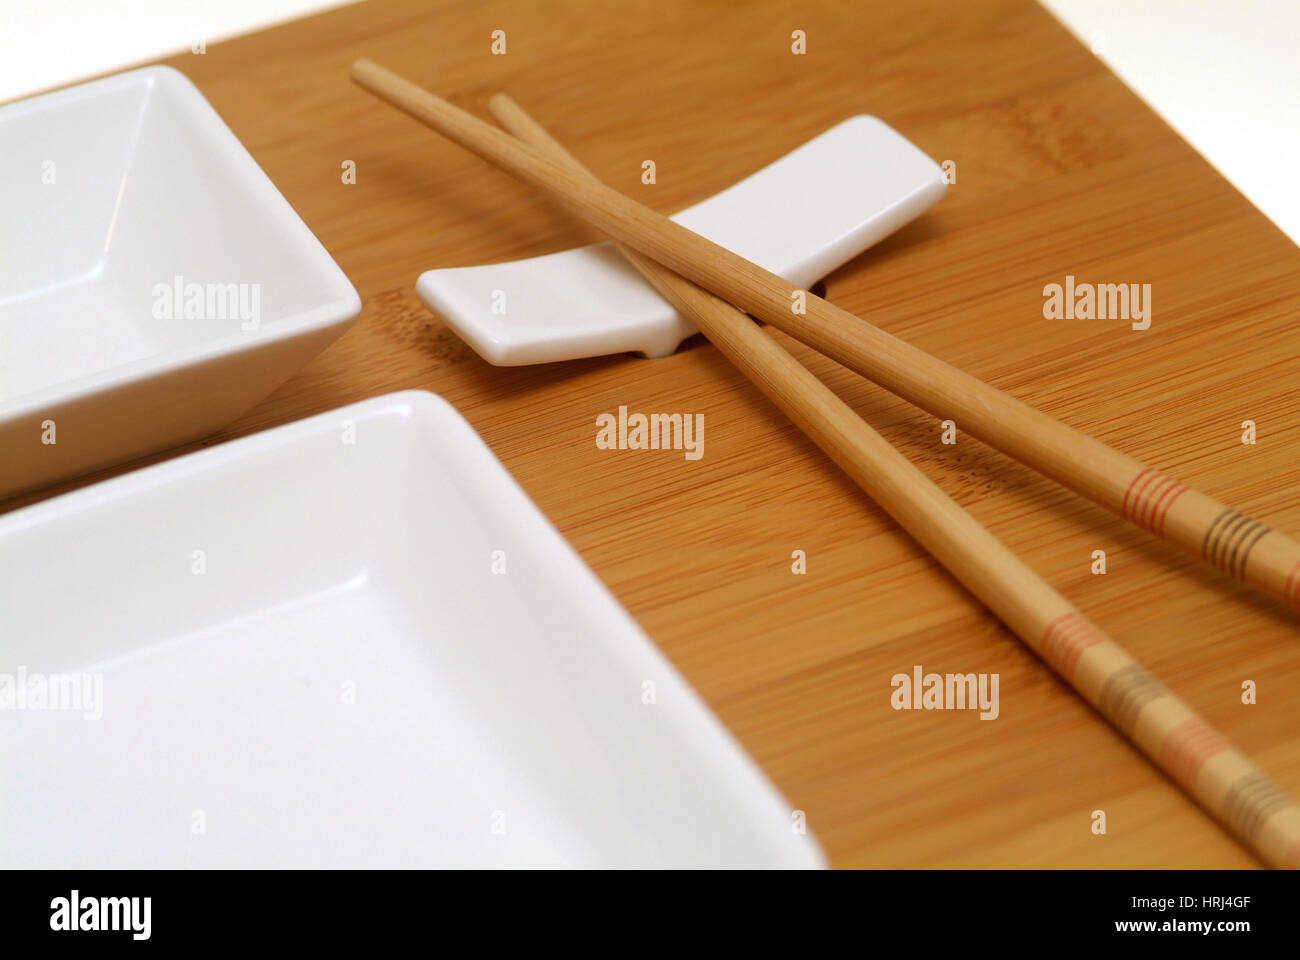 Chinesische St?bchen, Essbesteck - Chinese chopsticks, flatware Stock Photo